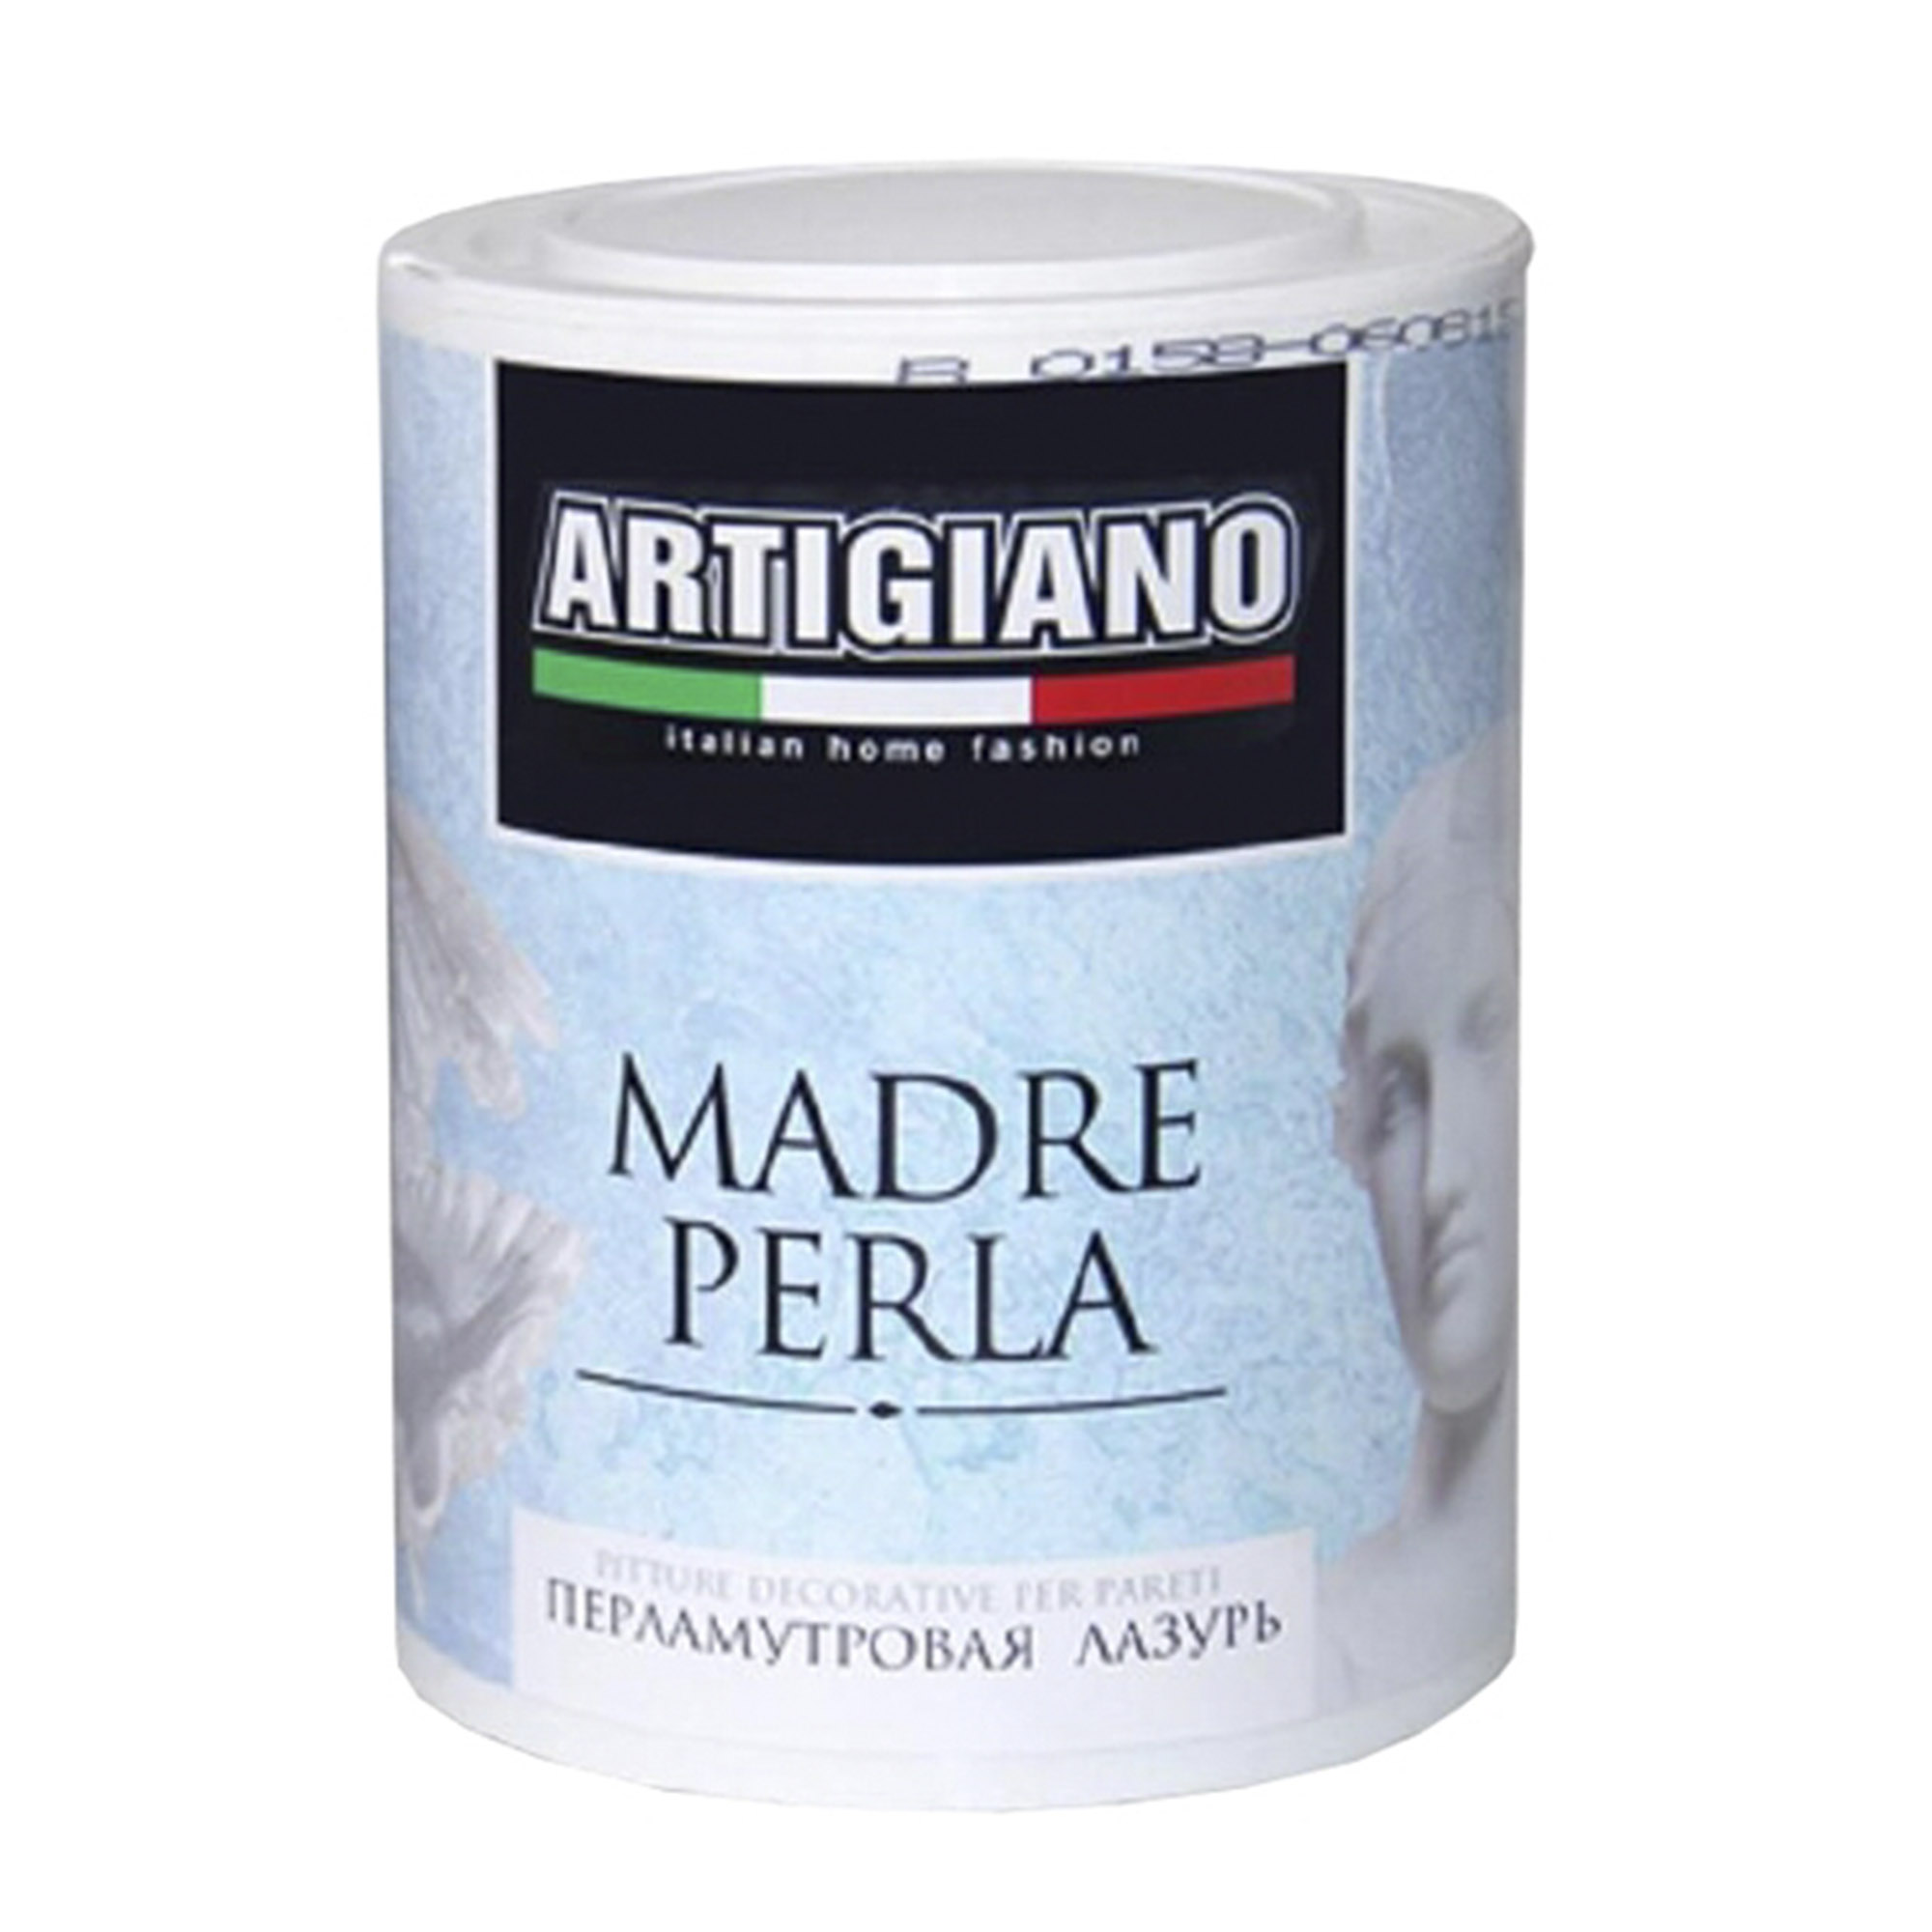 Лазурь декоративная Artigiano Madre Perla 1 л лак decorazza perla vernici argento 1 л dplv001 10